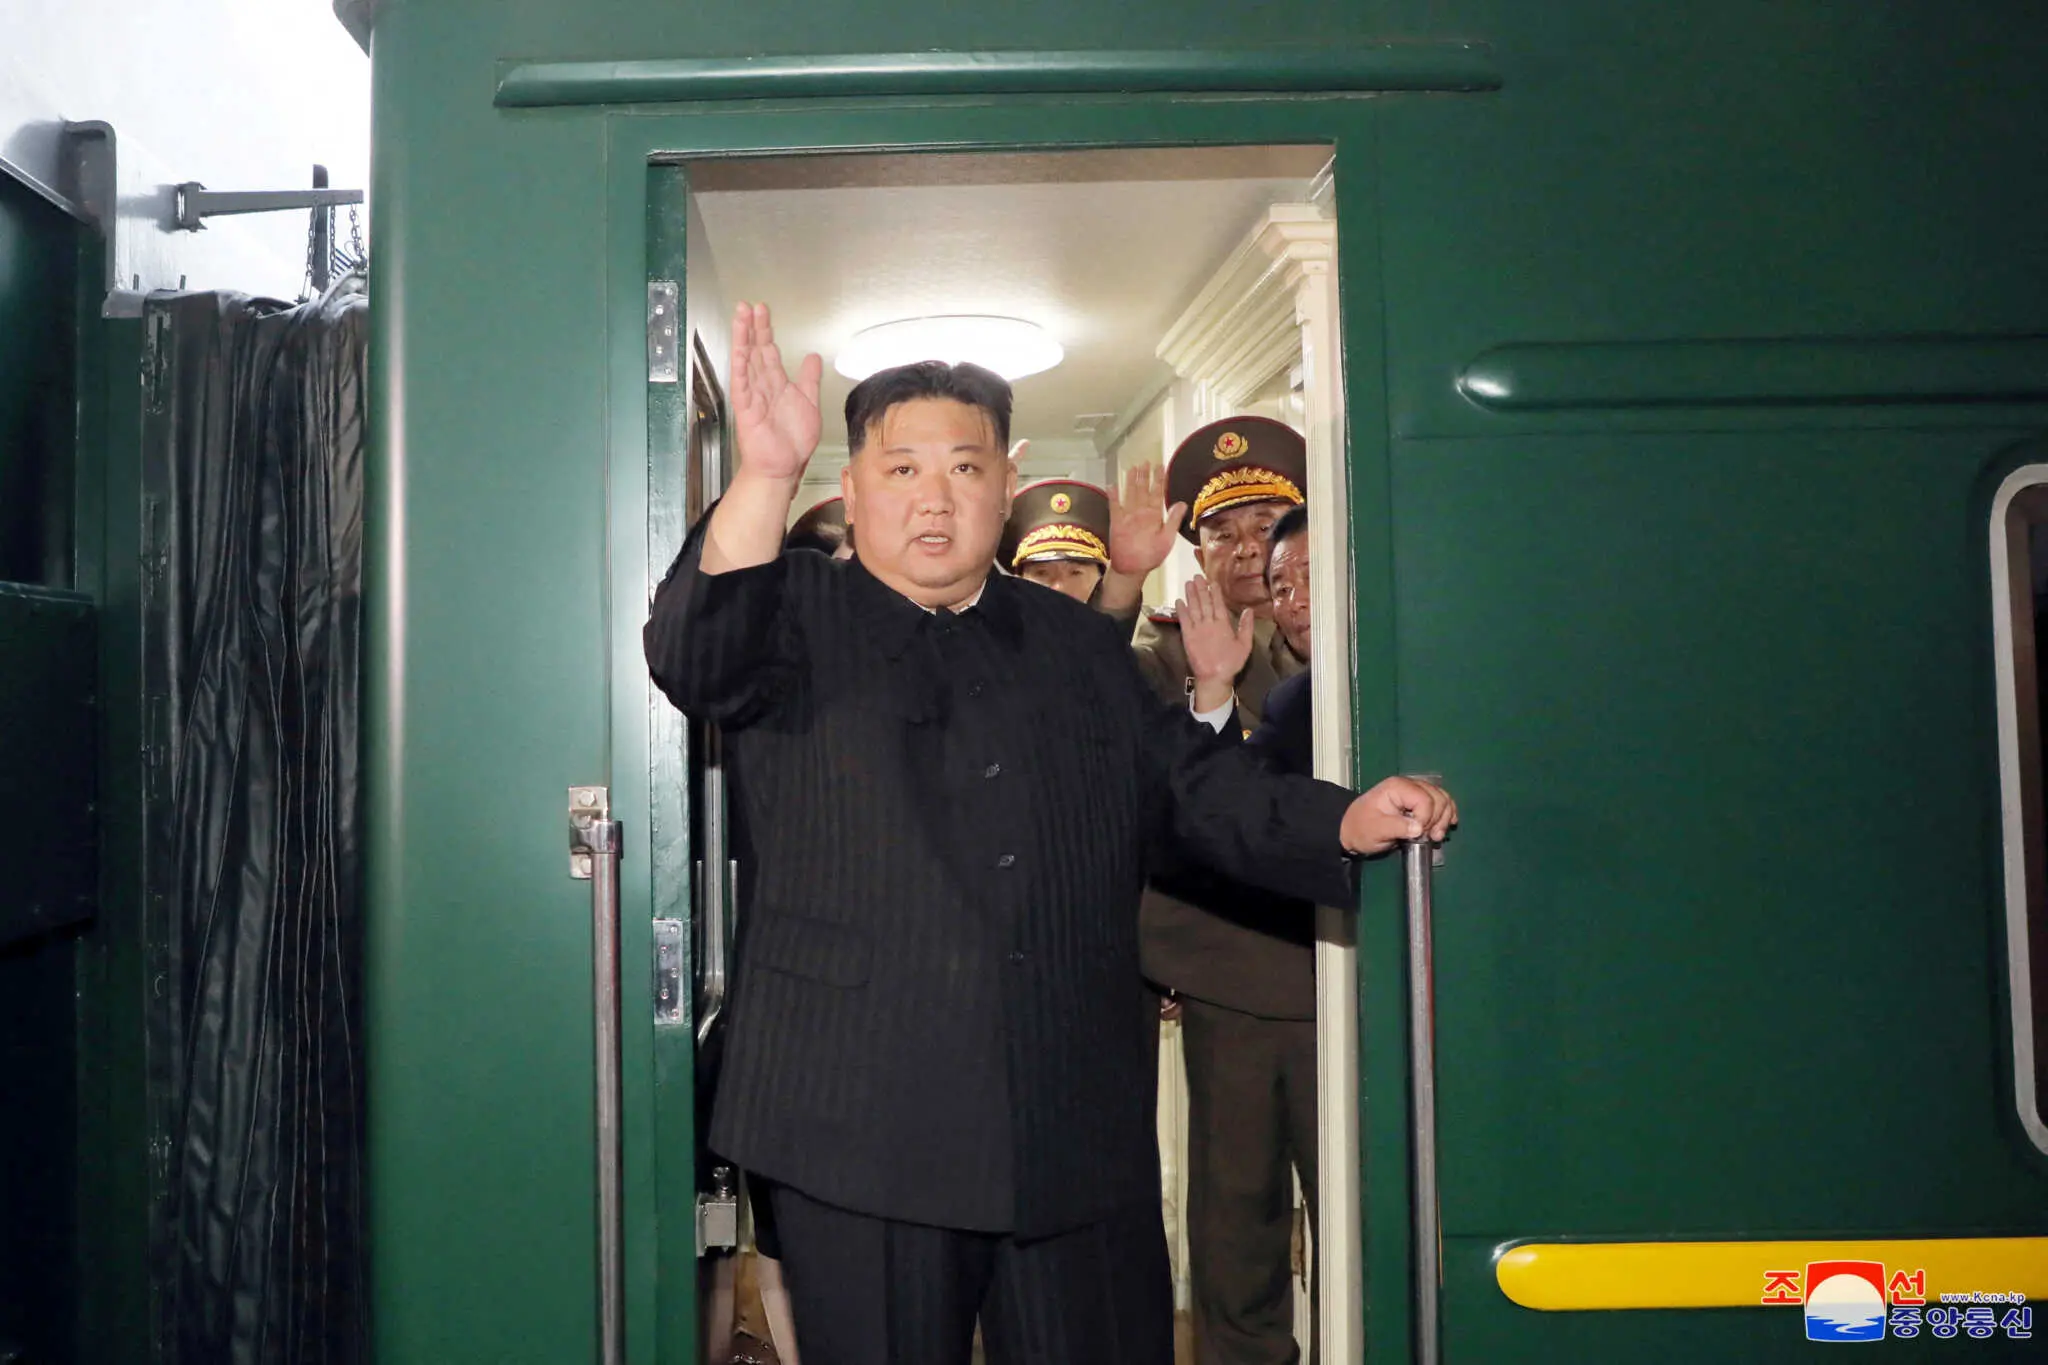 Έφτασε στη Ρωσία το τρένο του Κιμ Γιονγκ Ουν: Θωρακισμένο, με δερμάτινες καρέκλες και εκλεκτά κρασιά (βίντεο)